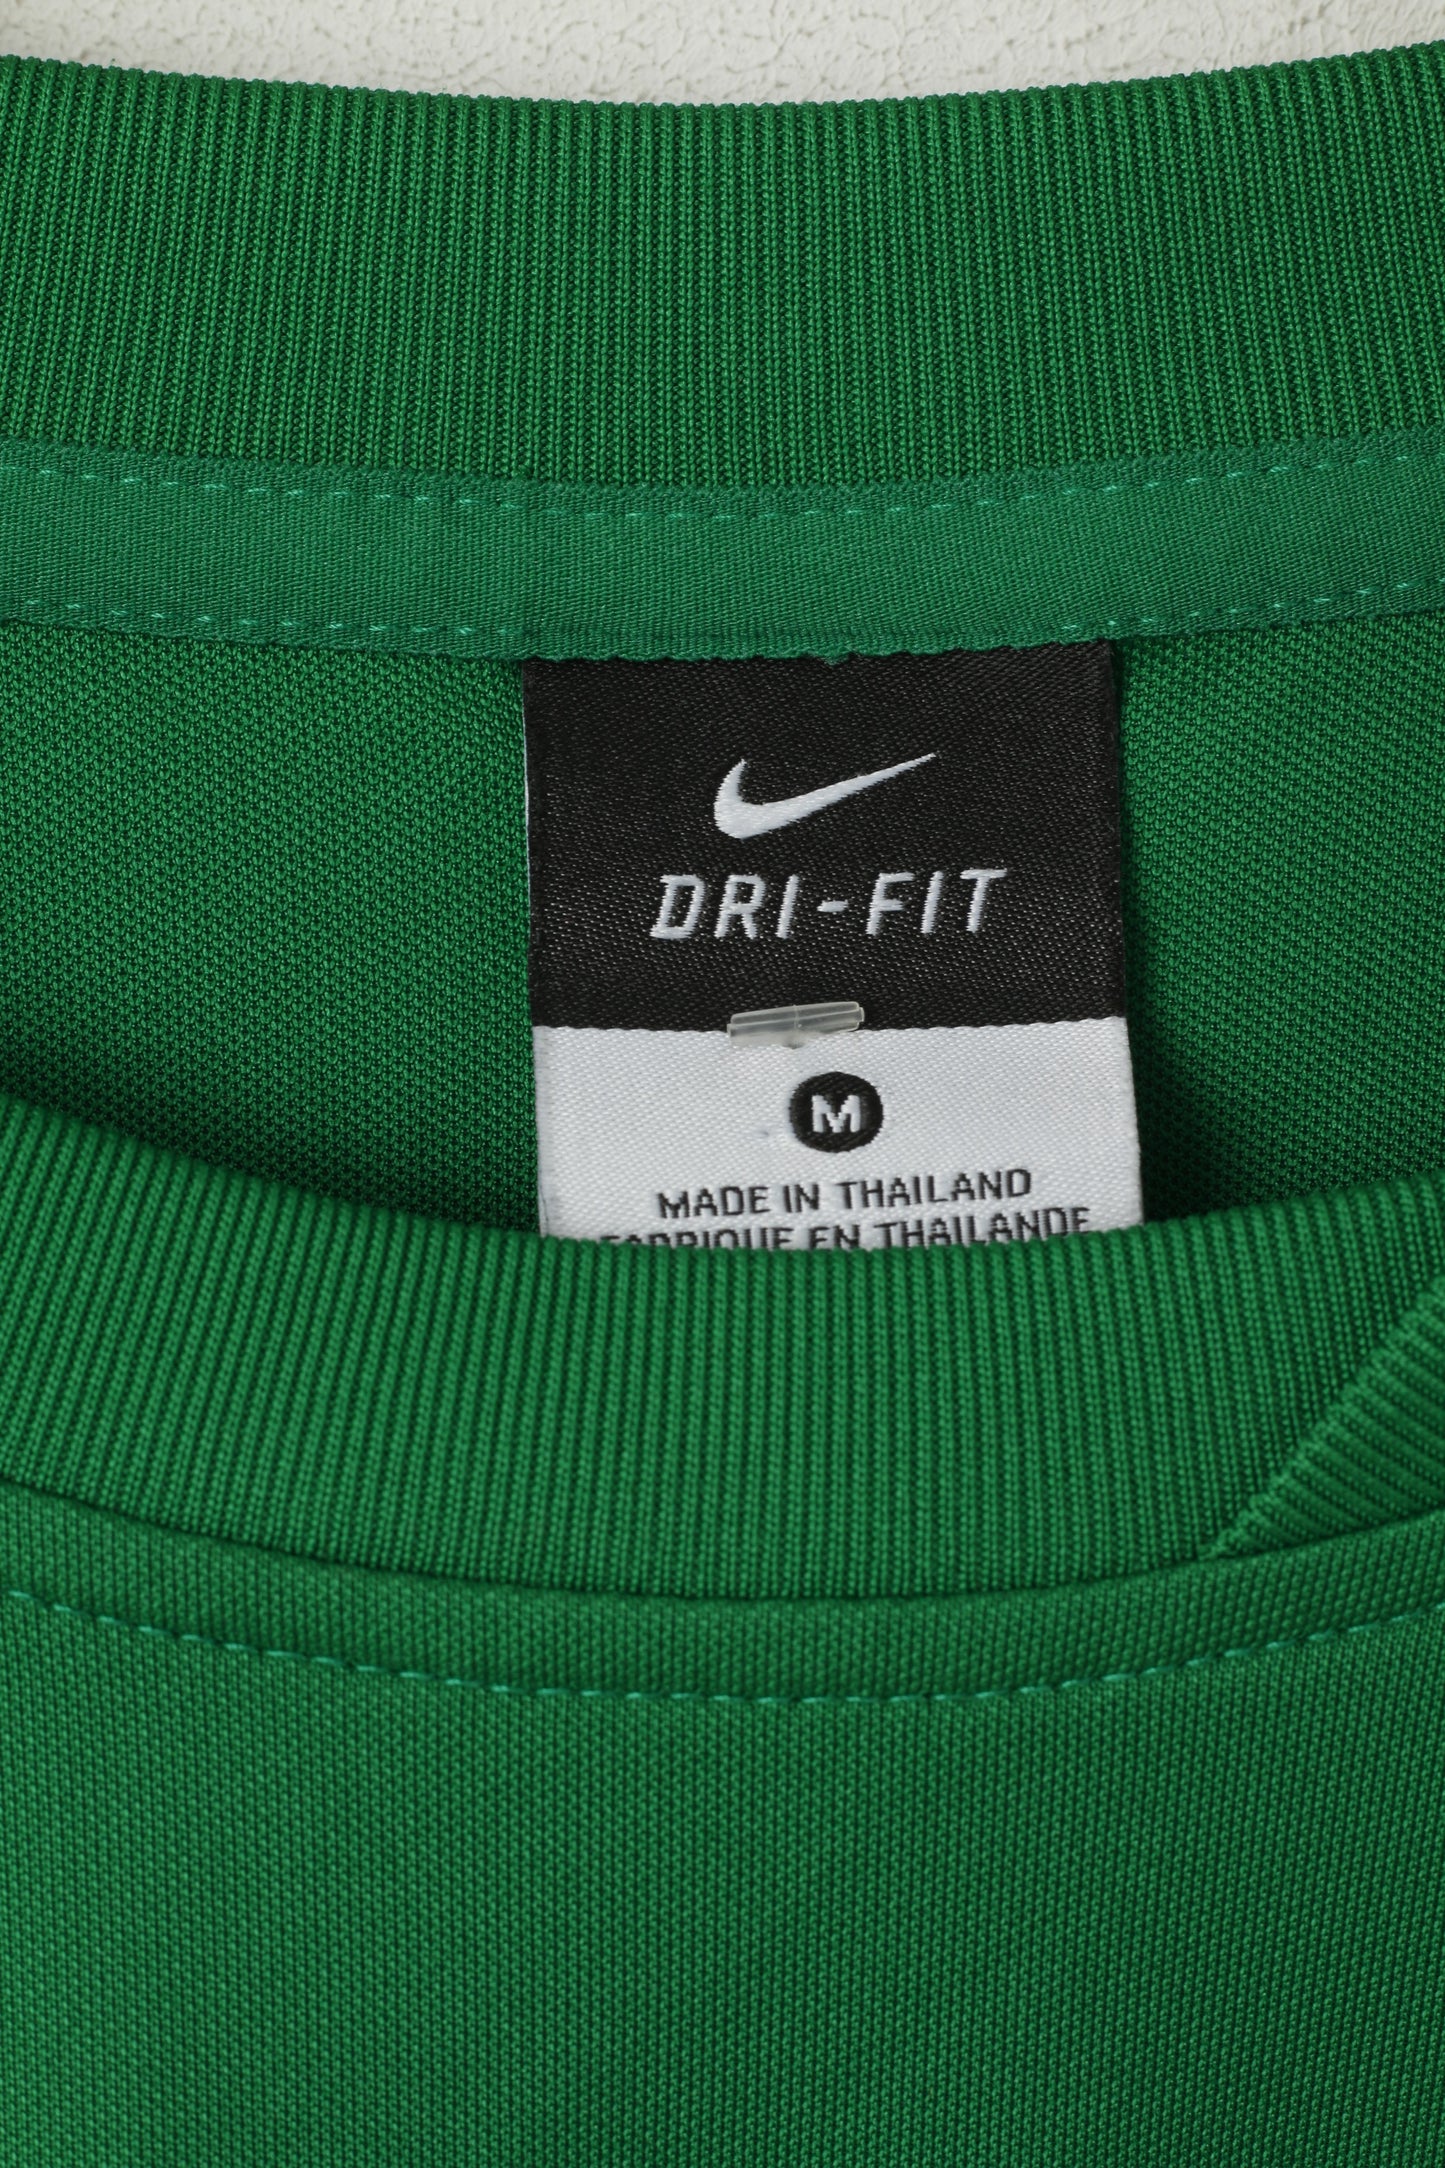 Maglia Nike Uomo M Verde Tus Lerbeck Sport #2 Activewear Maglia da calcio